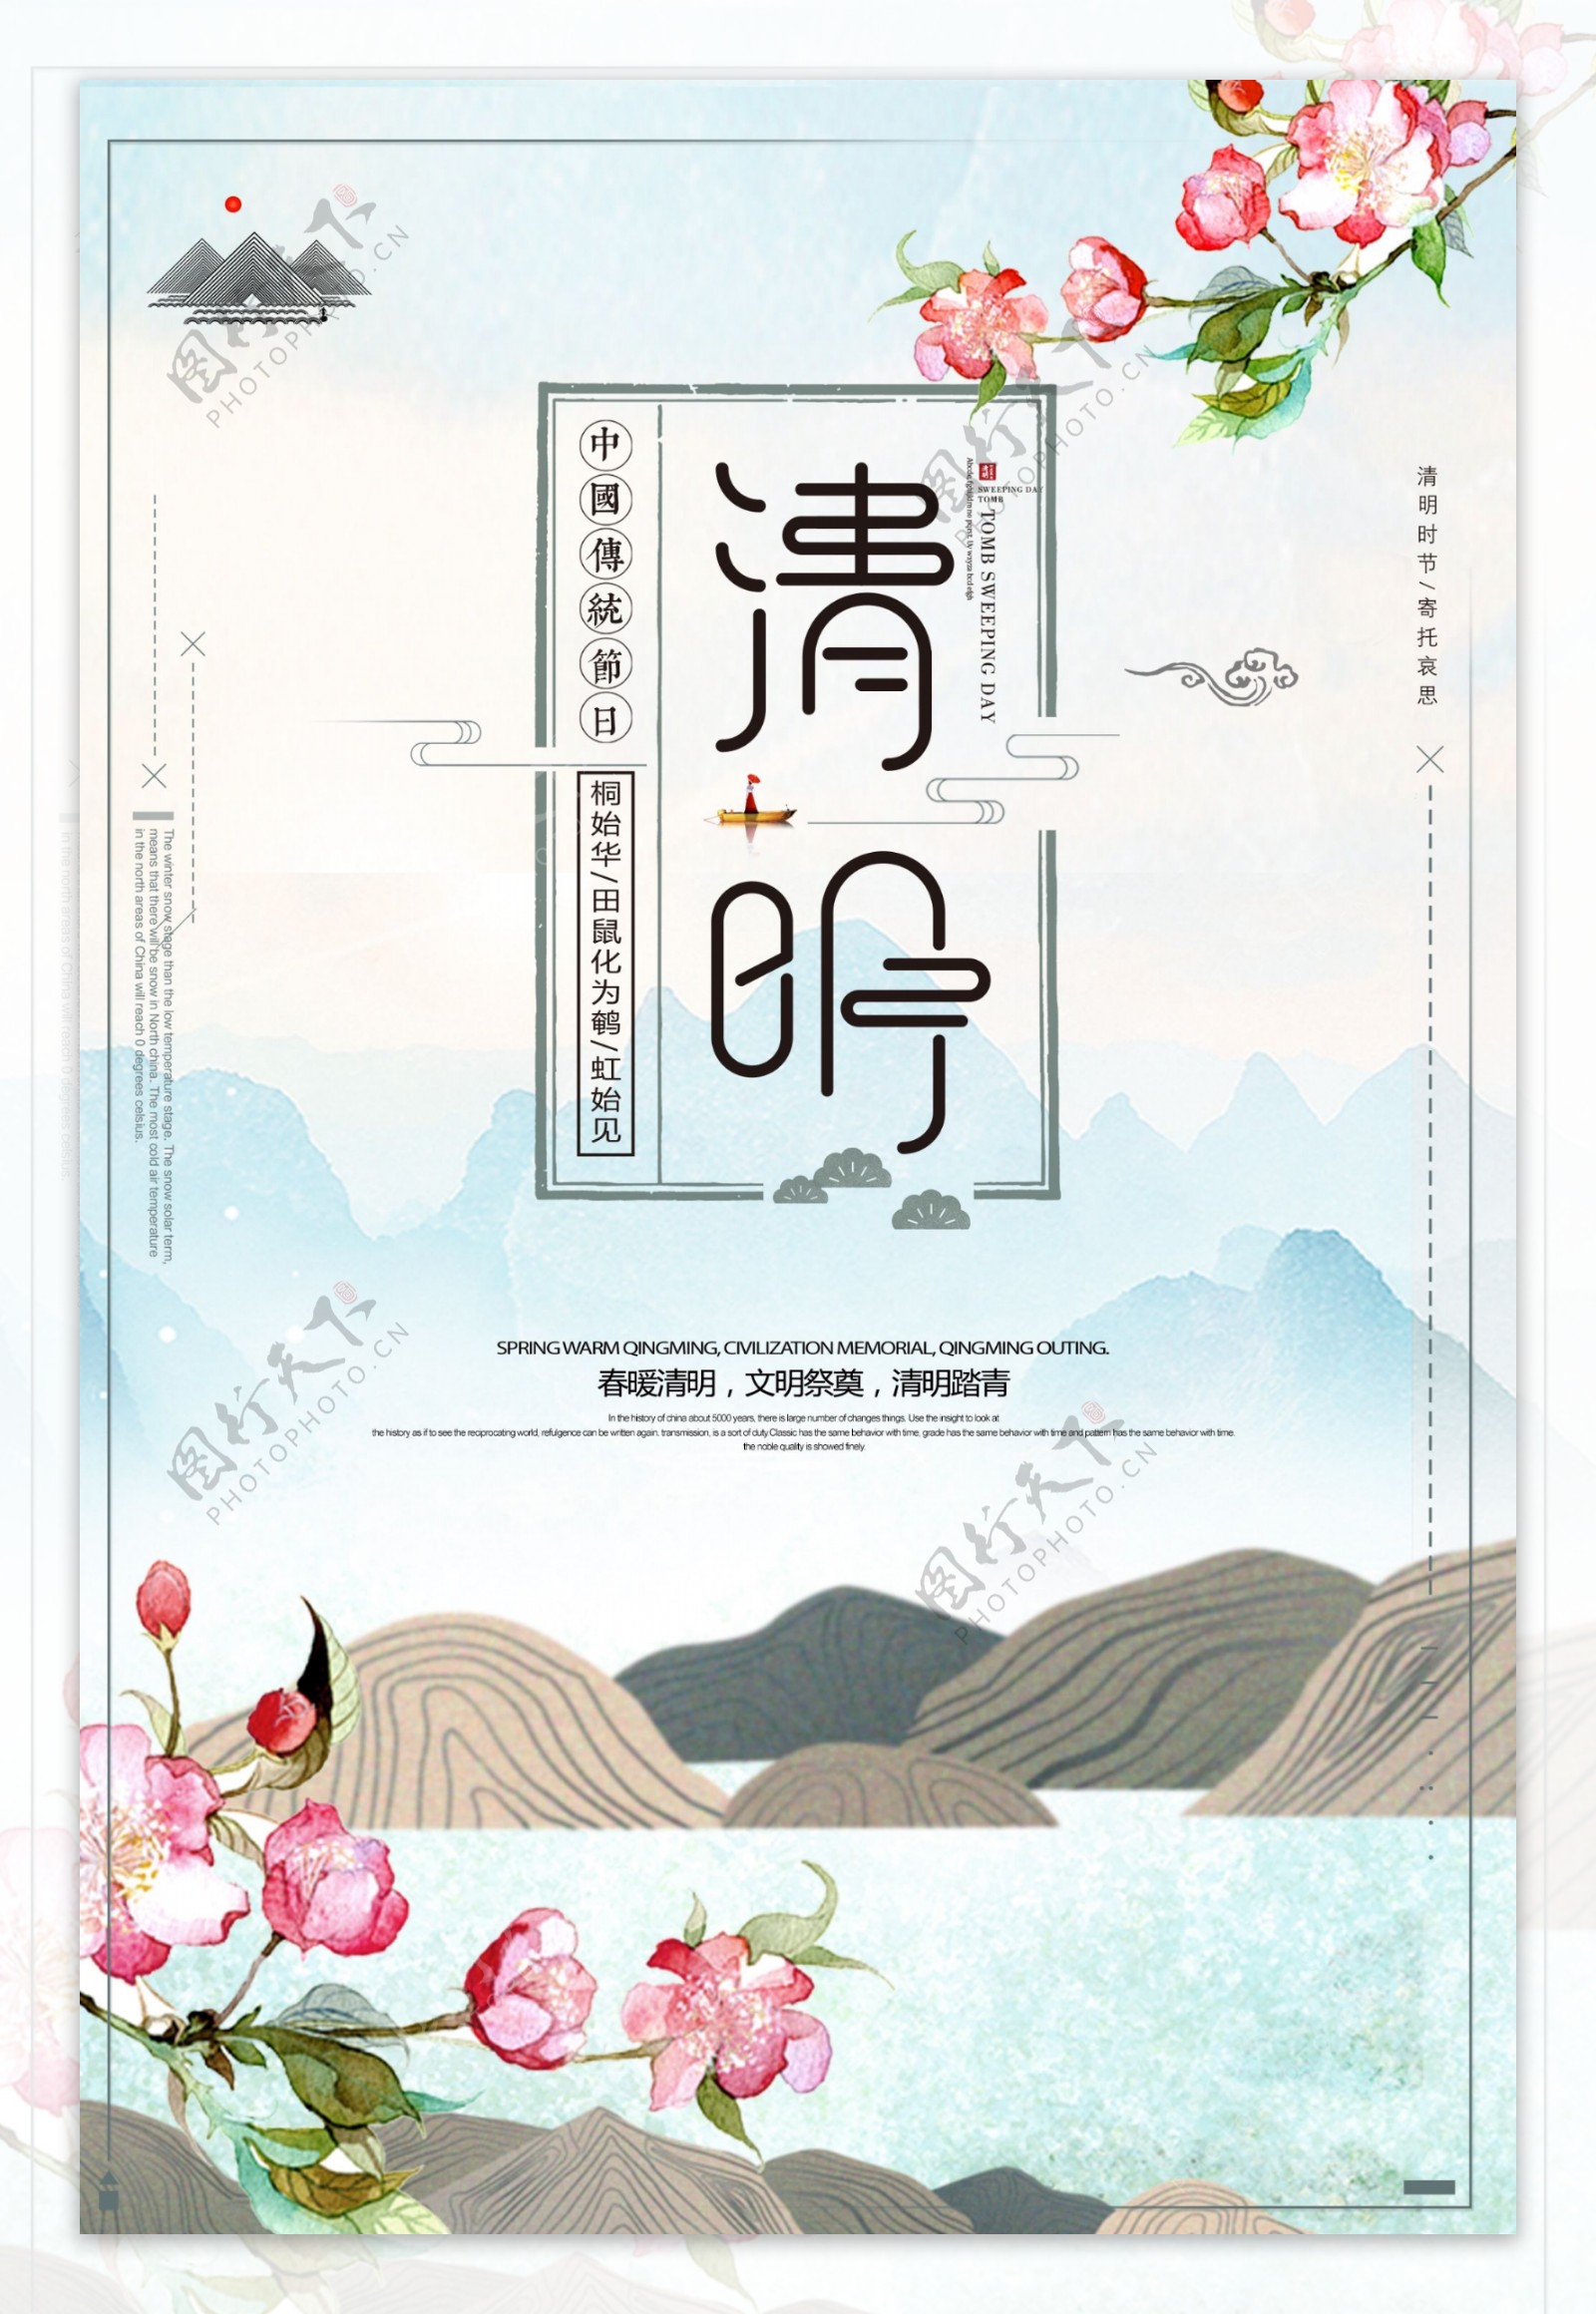 绿色清新中国传统清明节海报